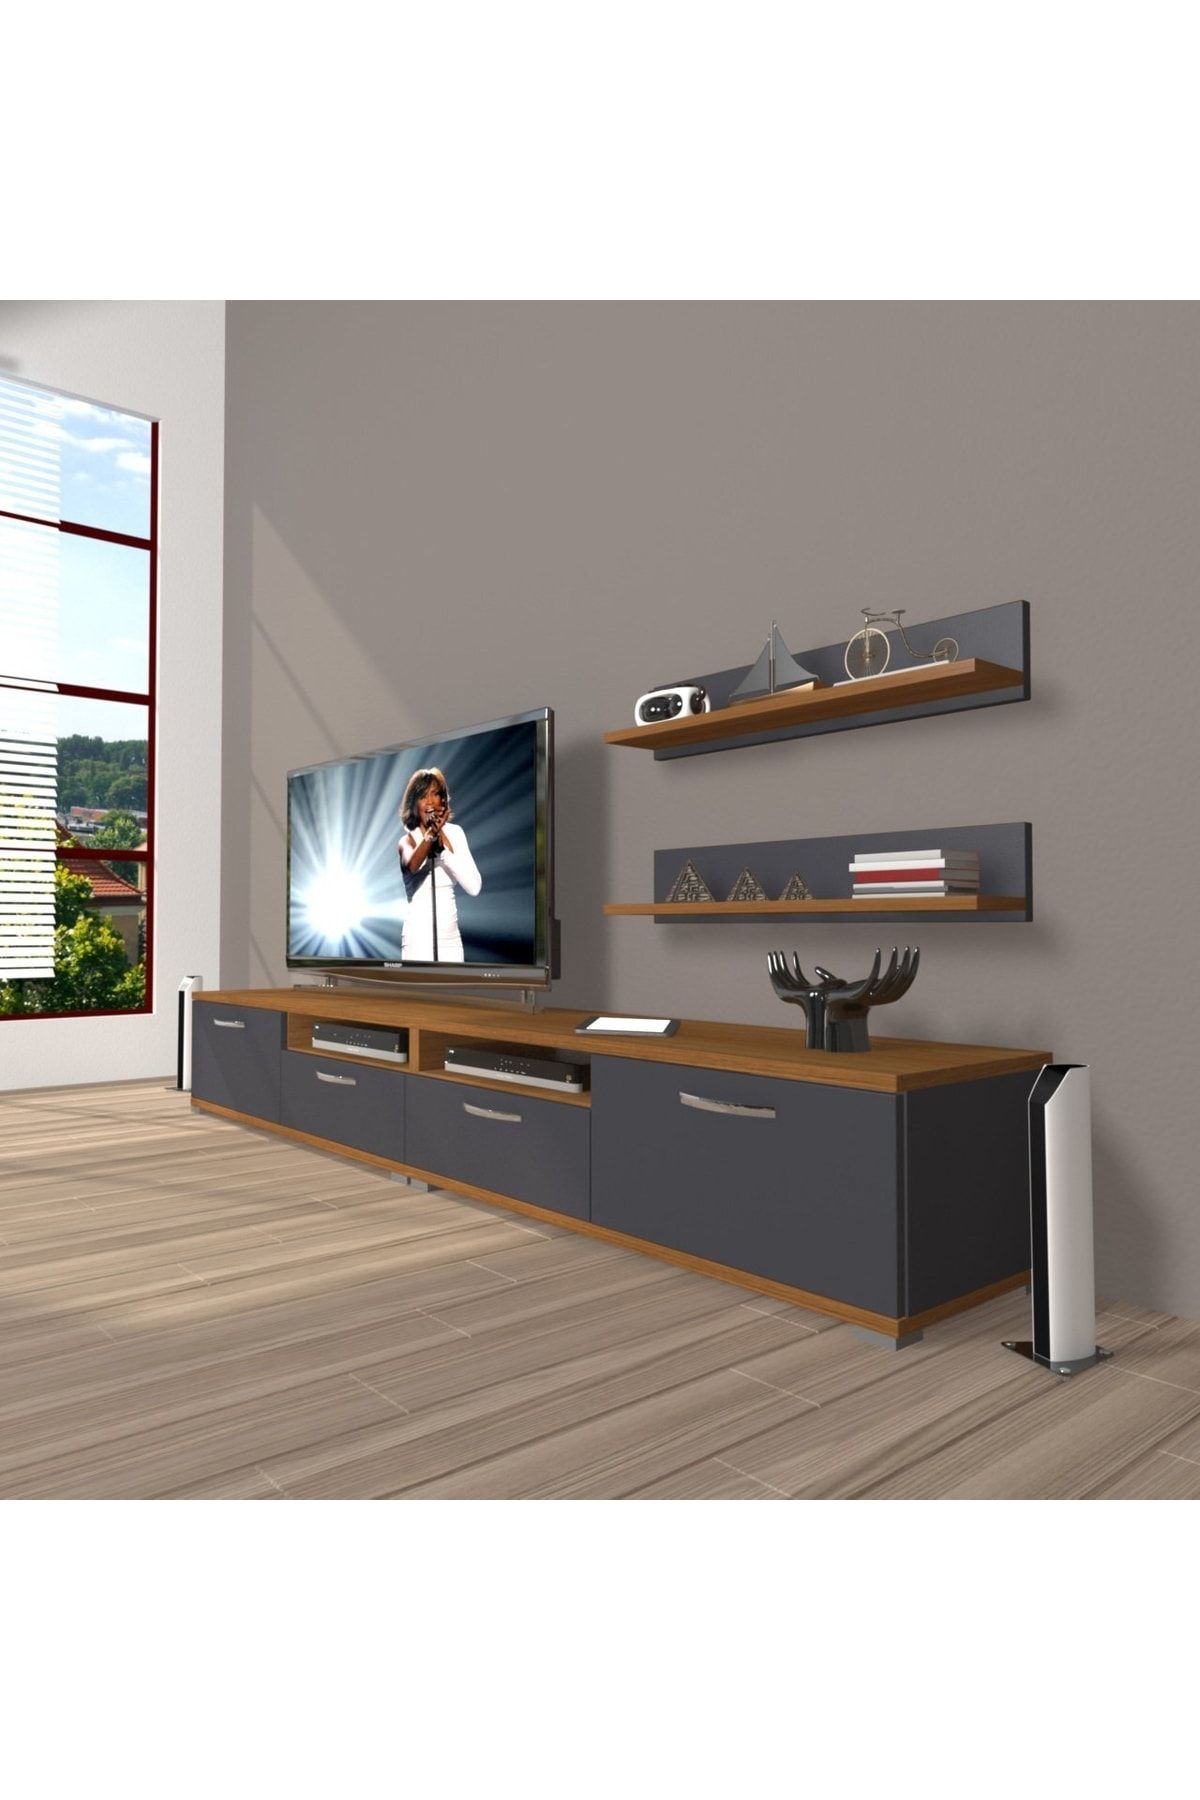 Decoraktiv Eko 200r Mdf Tv Ünitesi Tv Sehpası - Ceviz - Antrasit